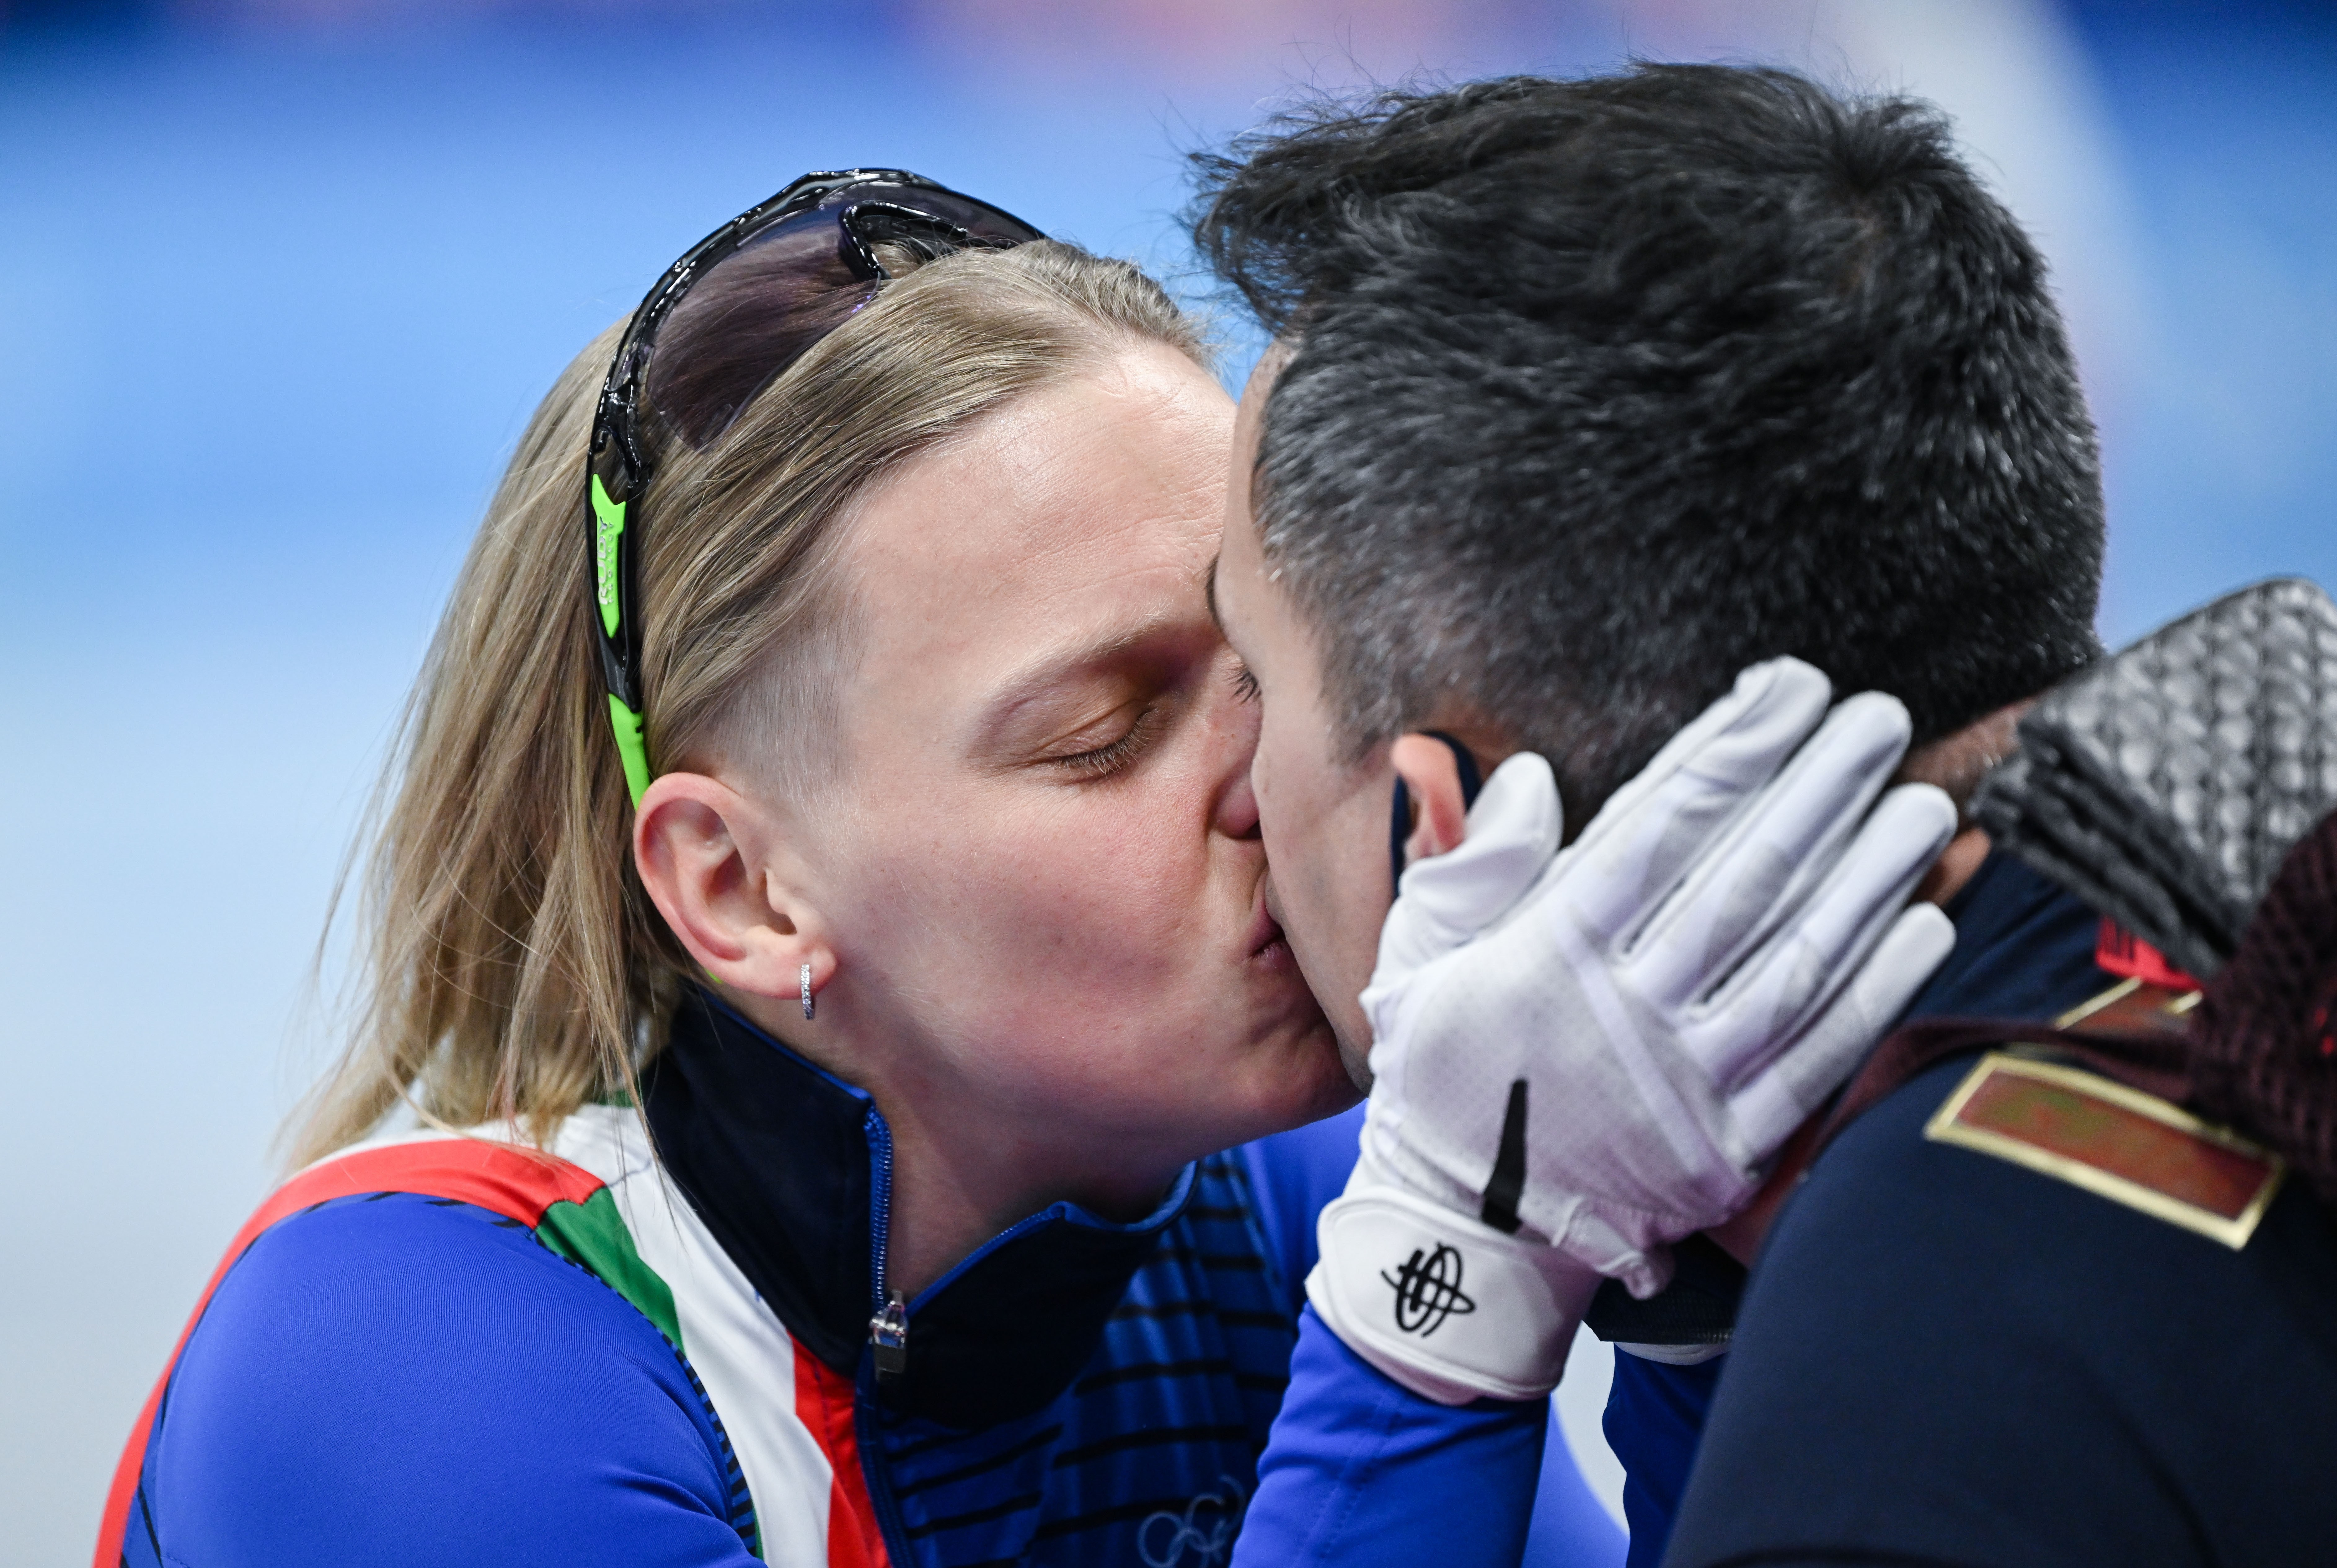 Arianna Fontana comemorou a medalha de ouro beijando seu marido e provocando a federação italiana (Foto: Getty Images)